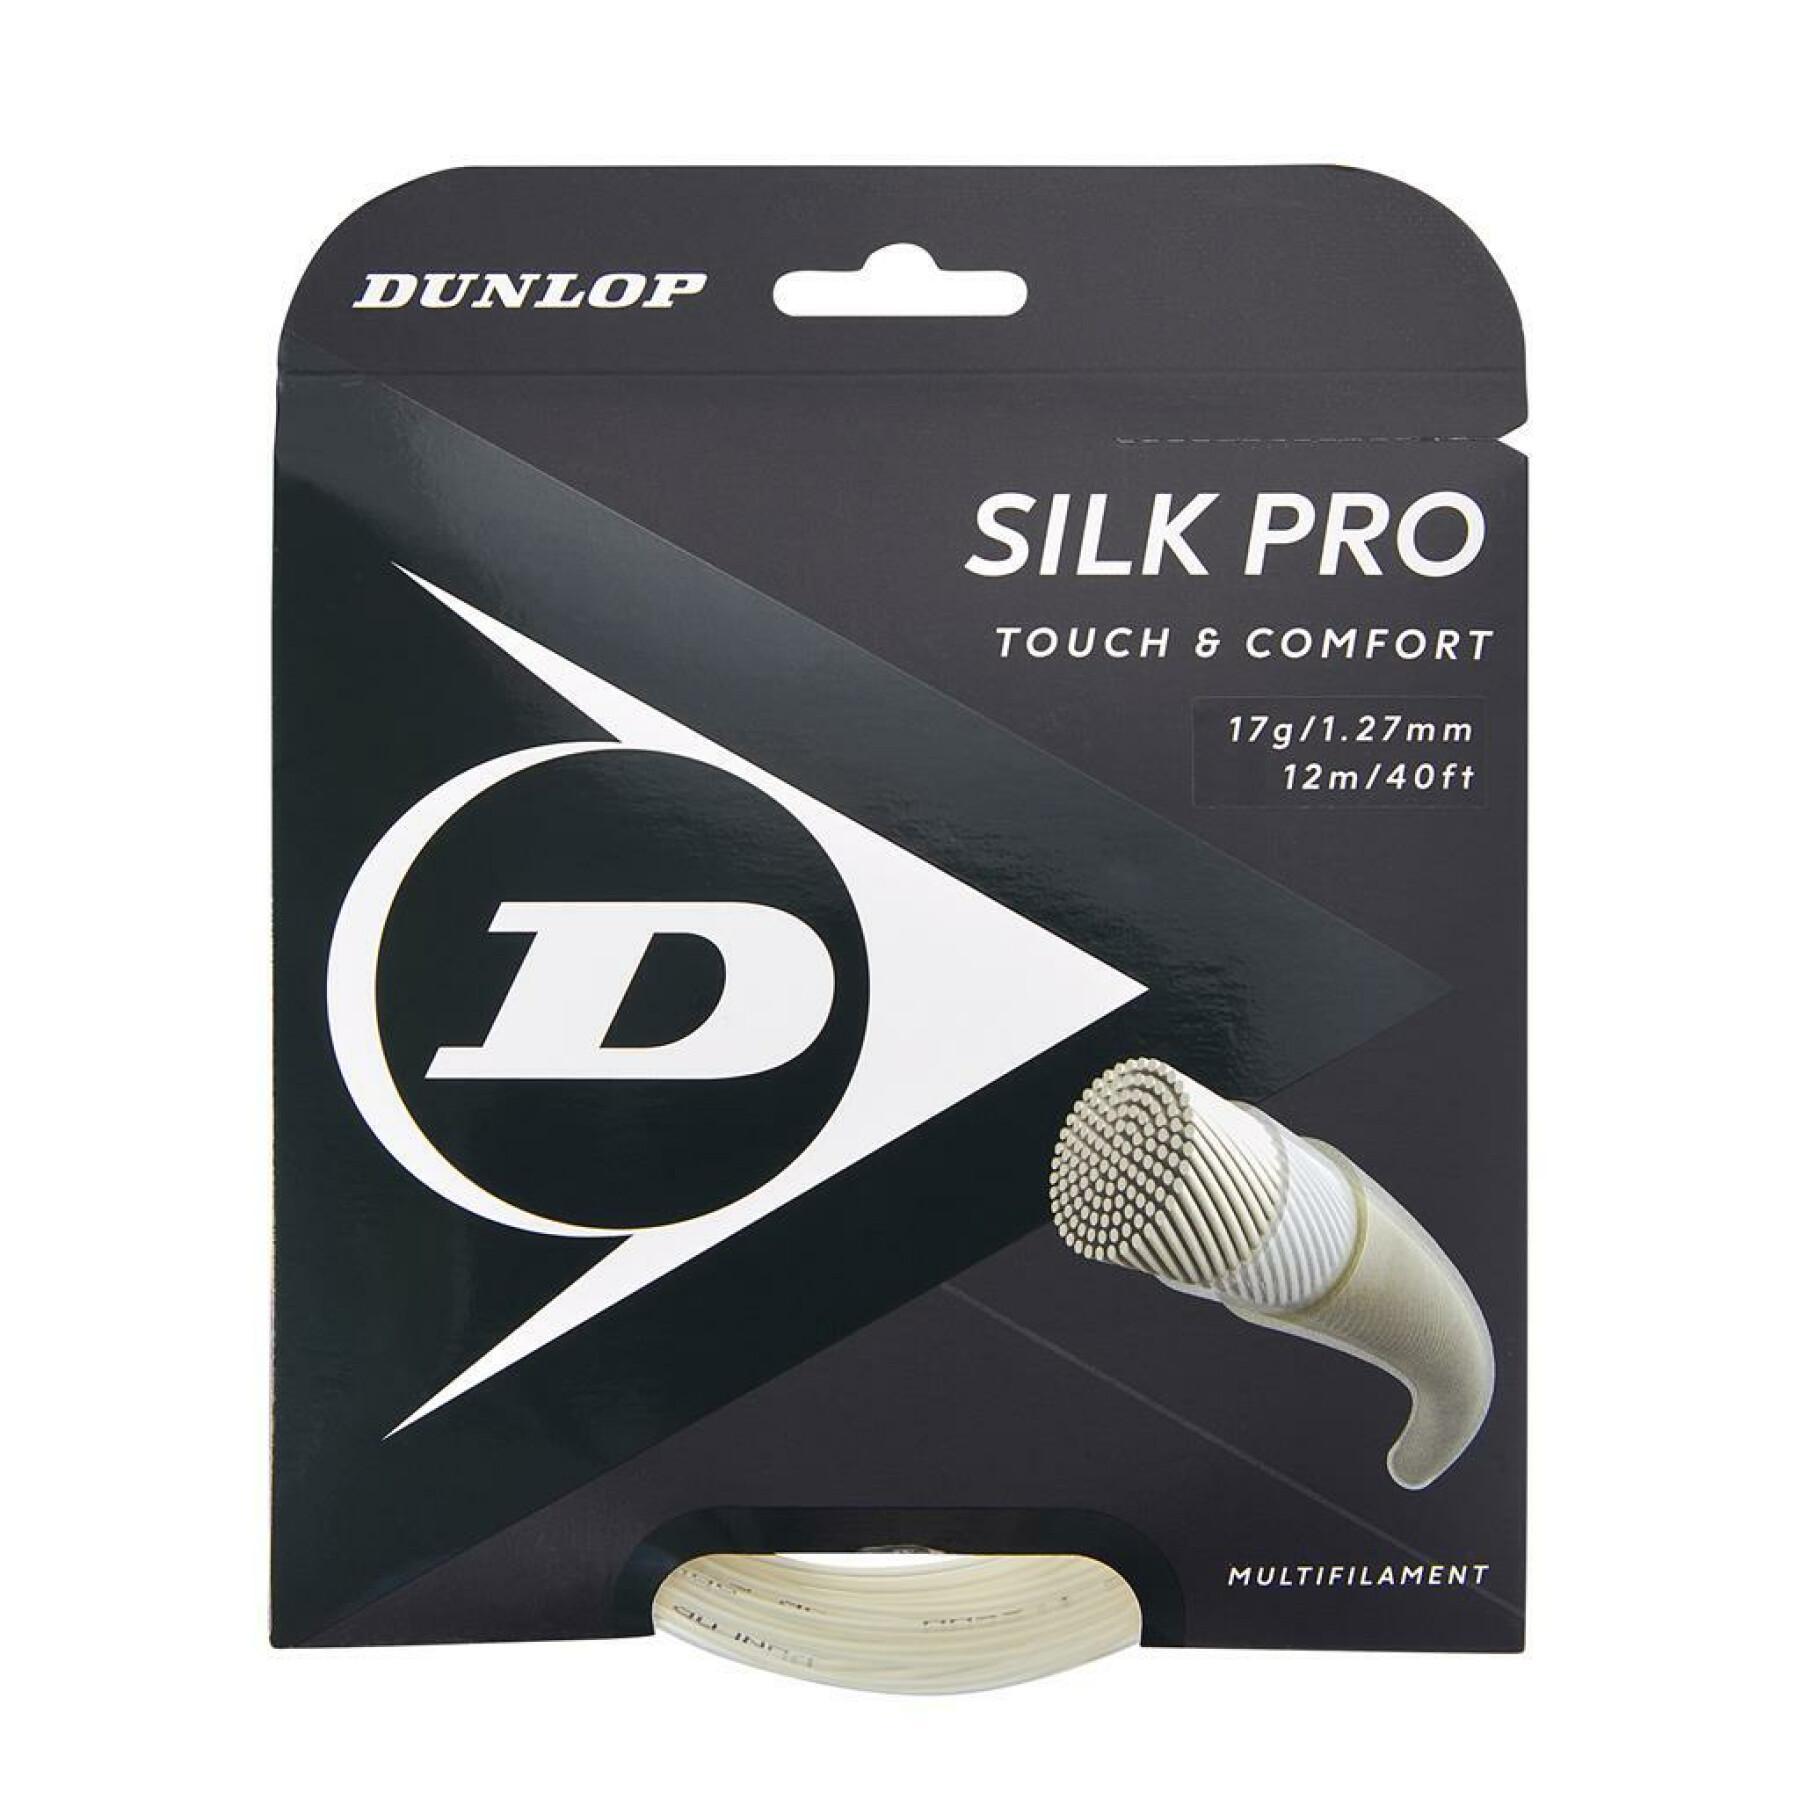 Besaitung Dunlop silk pro